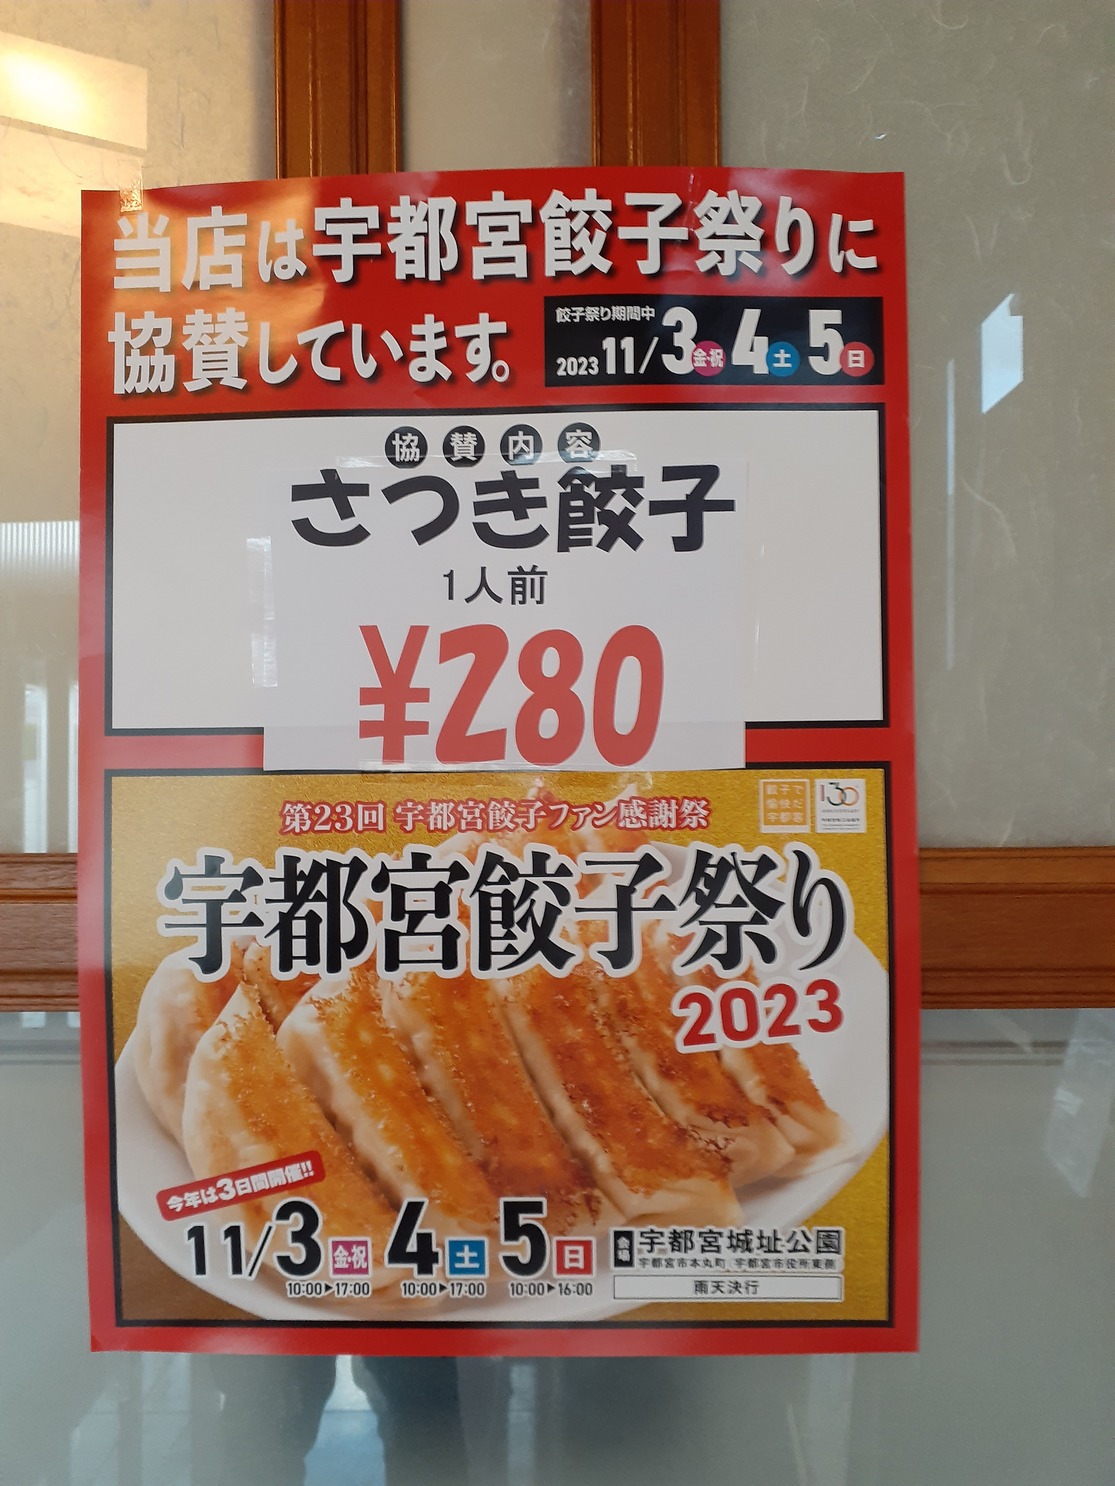 宇都宮餃子祭り2023に出店＆店舗は協賛でさつき餃子が割引！